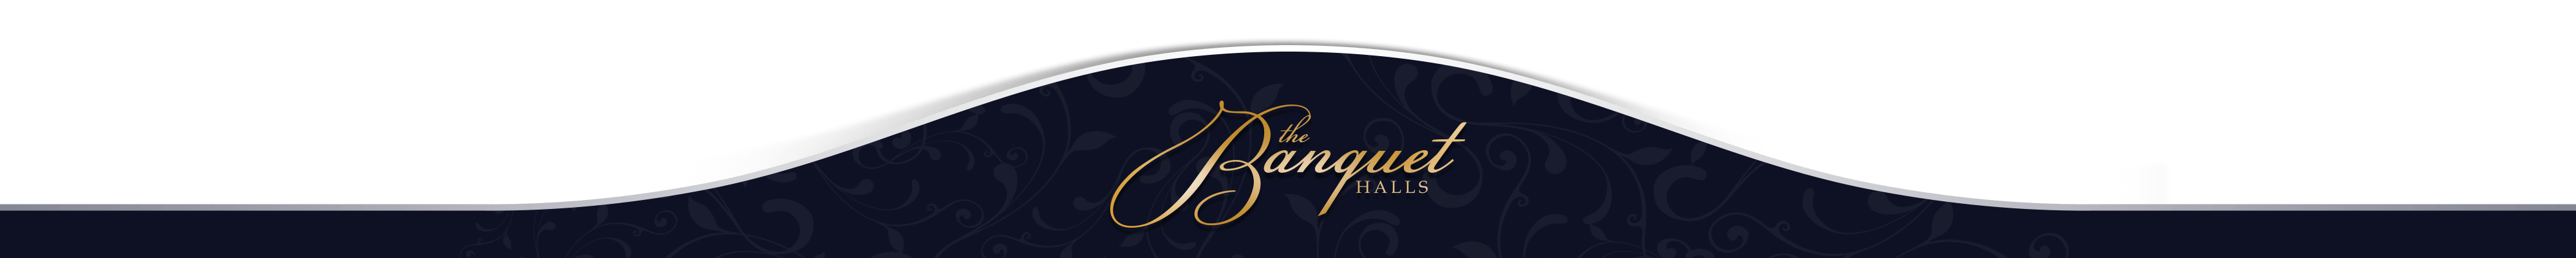 The Banquet Halls